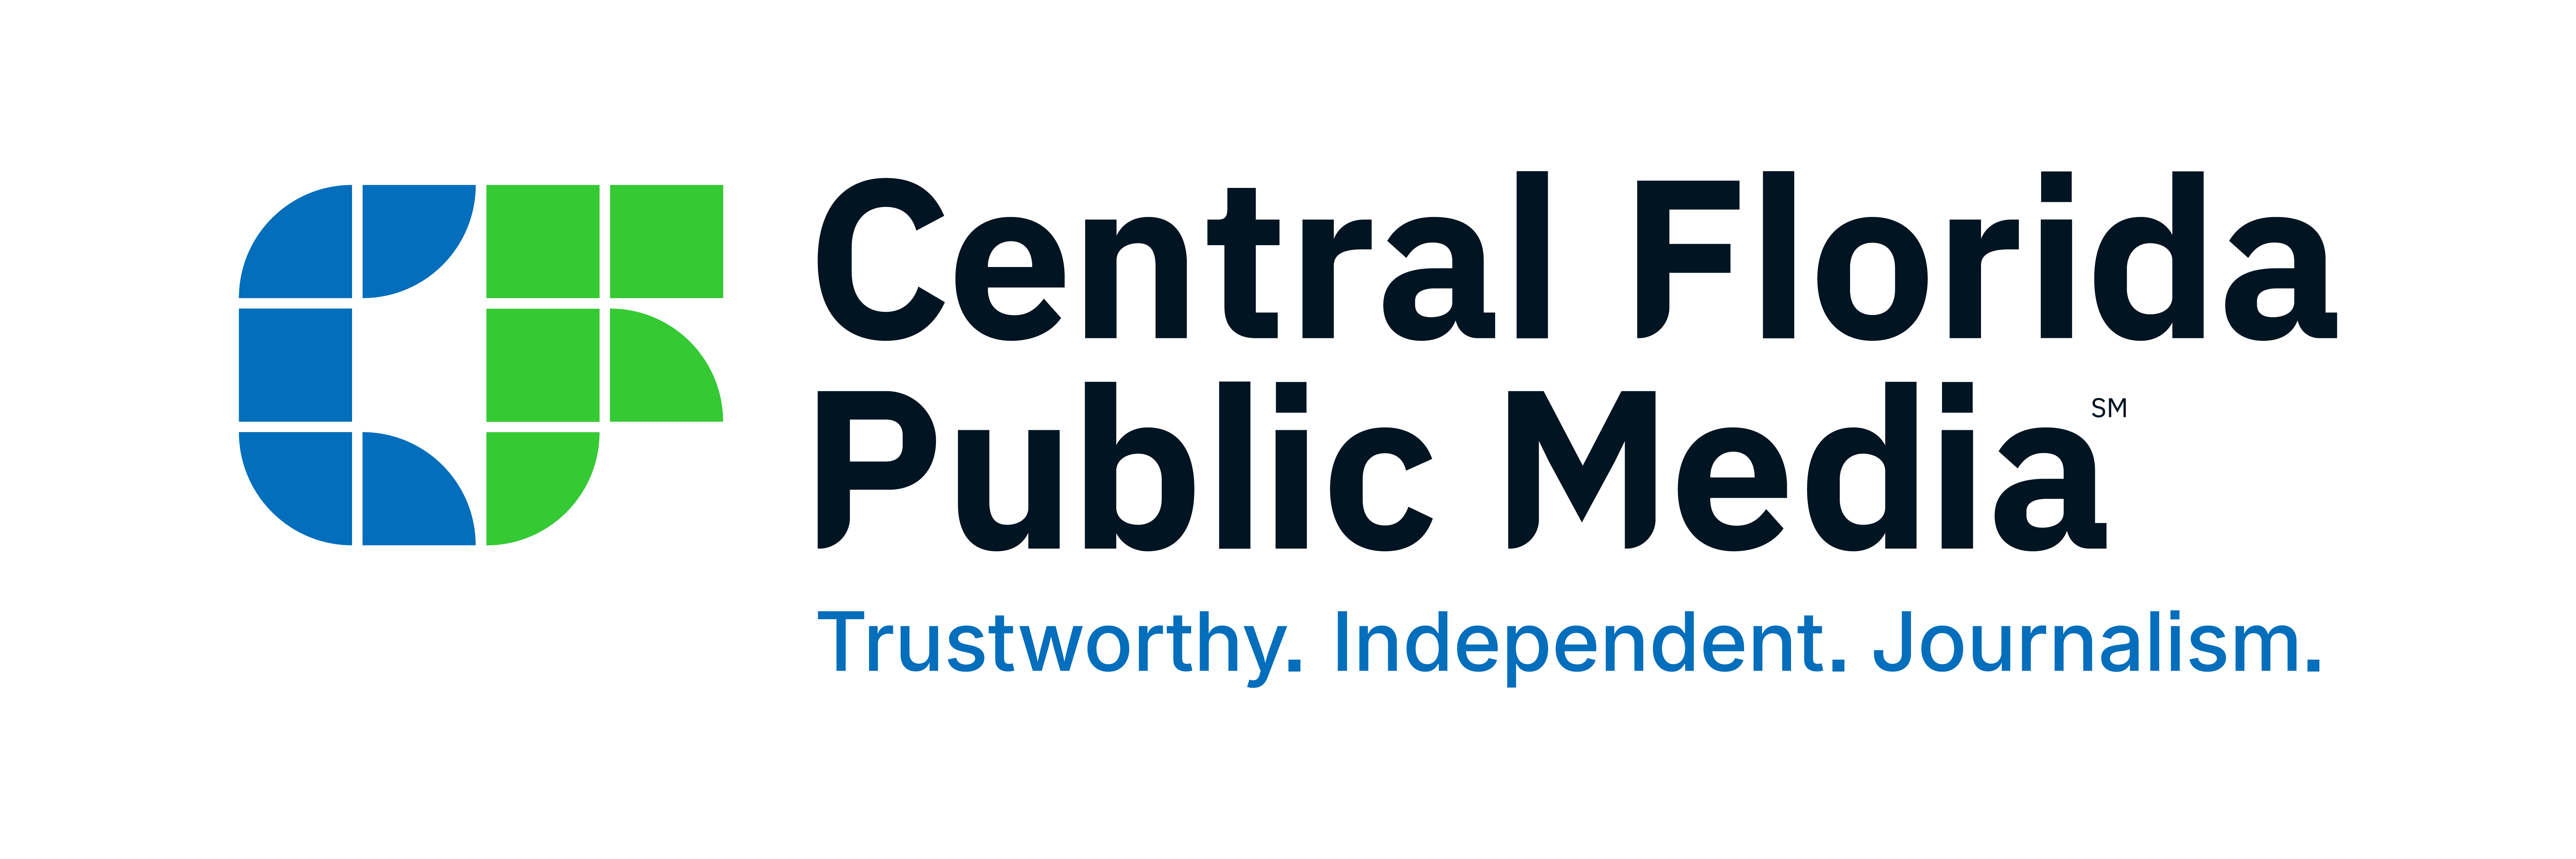 Central Florida Public Media (previously WMFE)